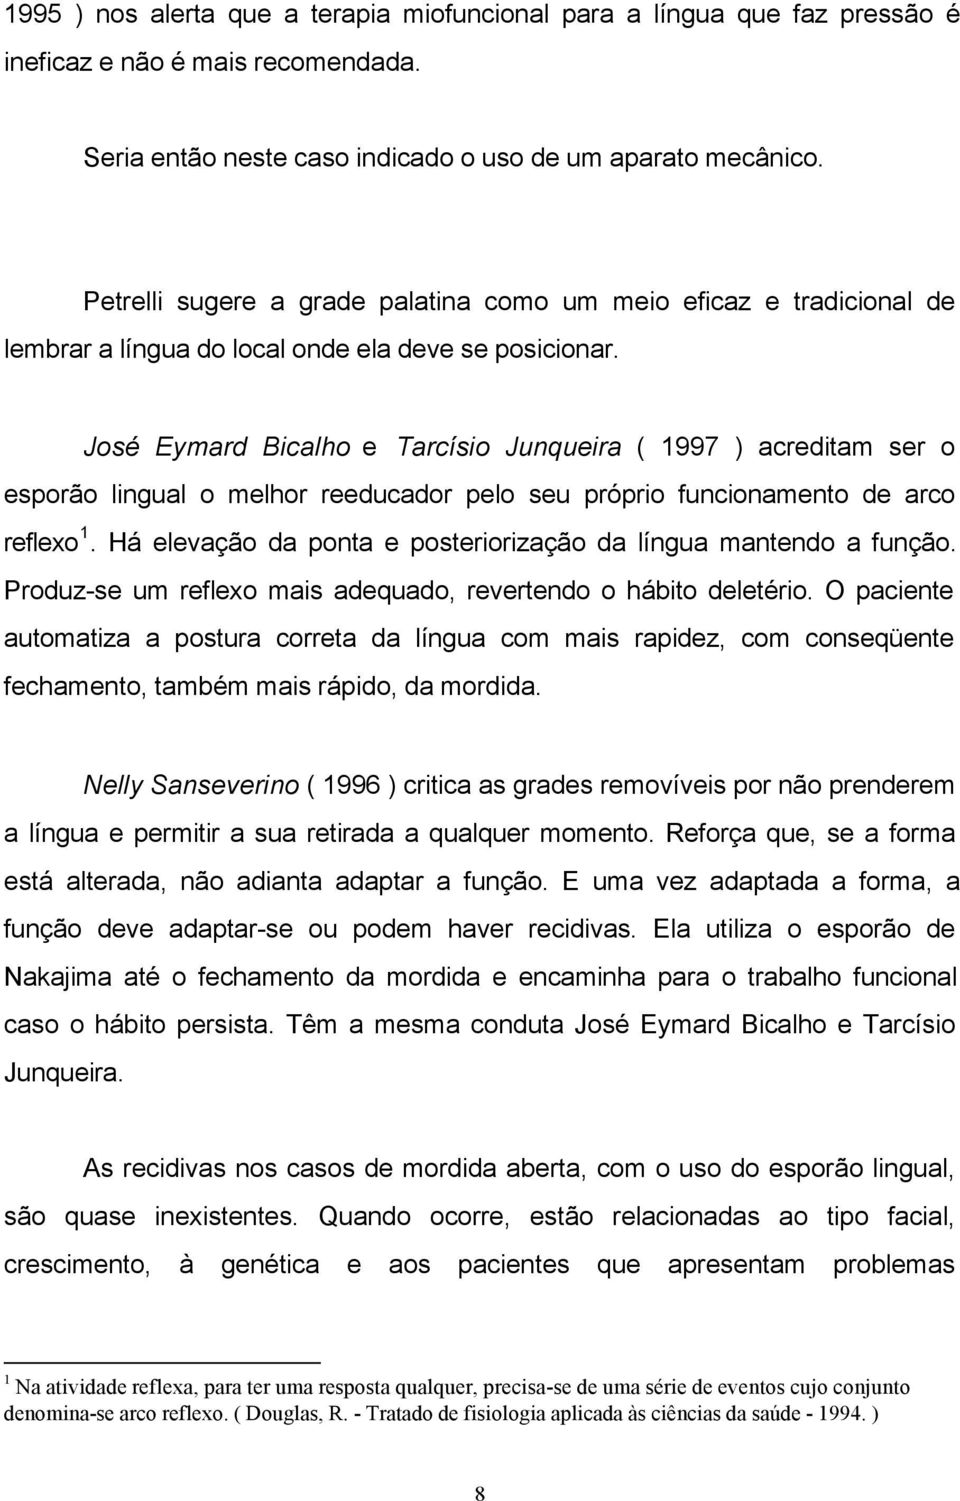 José Eymard Bicalho e Tarcísio Junqueira ( 1997 ) acreditam ser o esporão lingual o melhor reeducador pelo seu próprio funcionamento de arco reflexo 1.